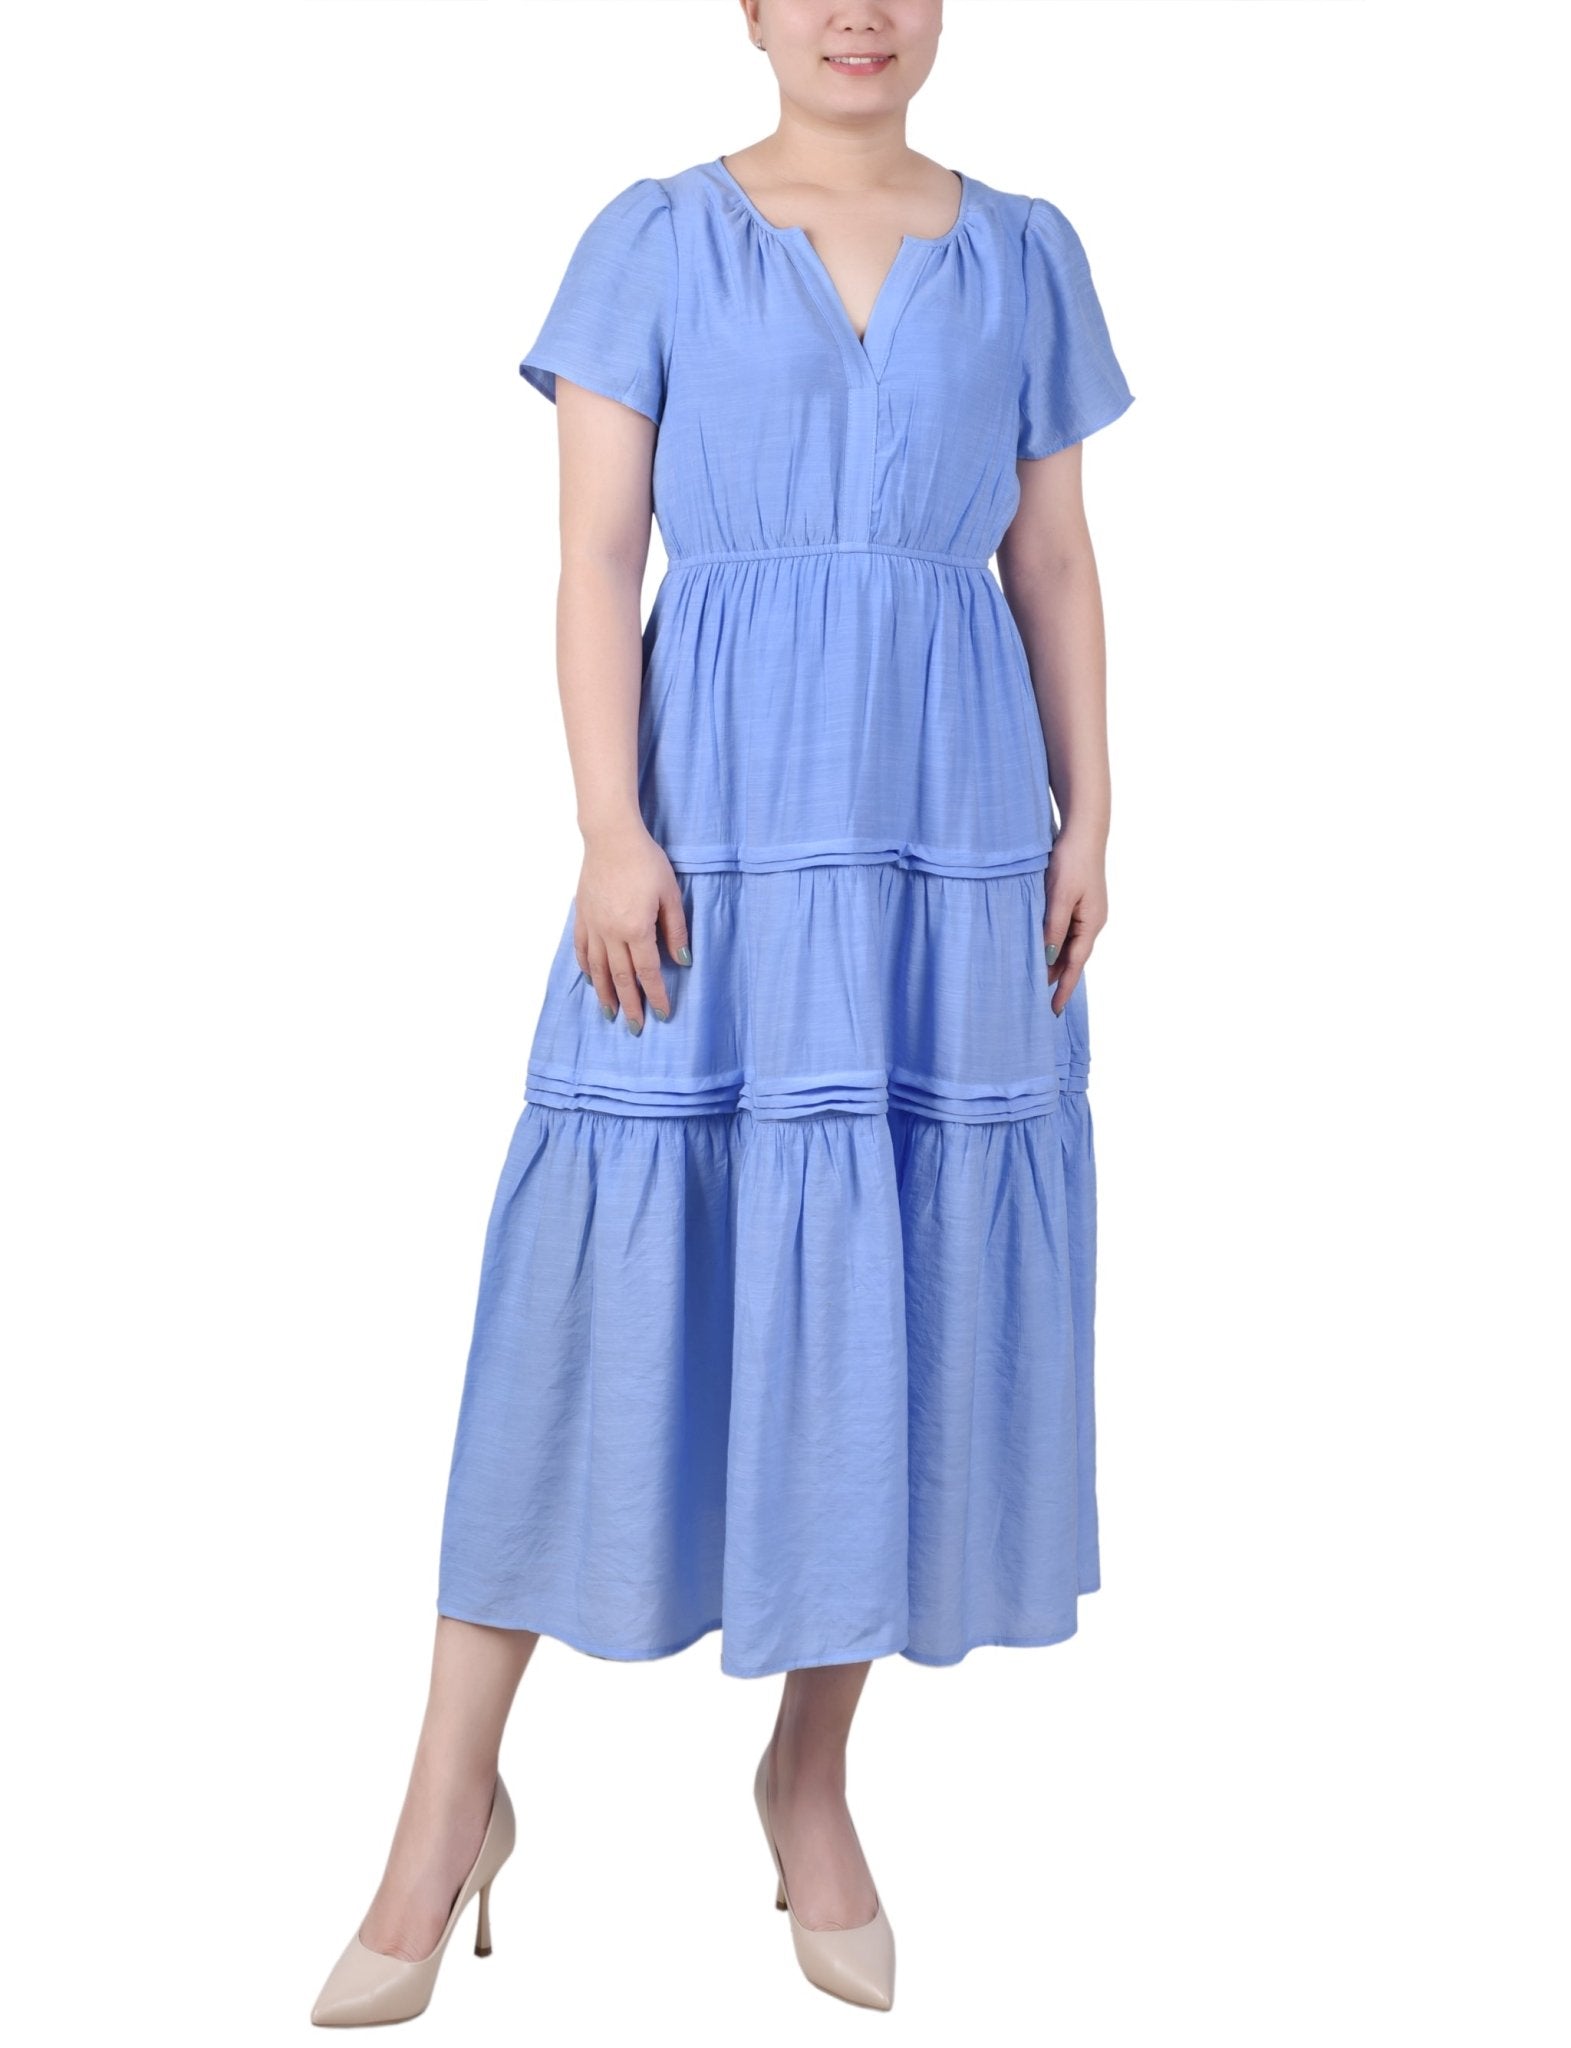 Ankle Length Short Sleeve Dress - Petite - DressbarnDresses